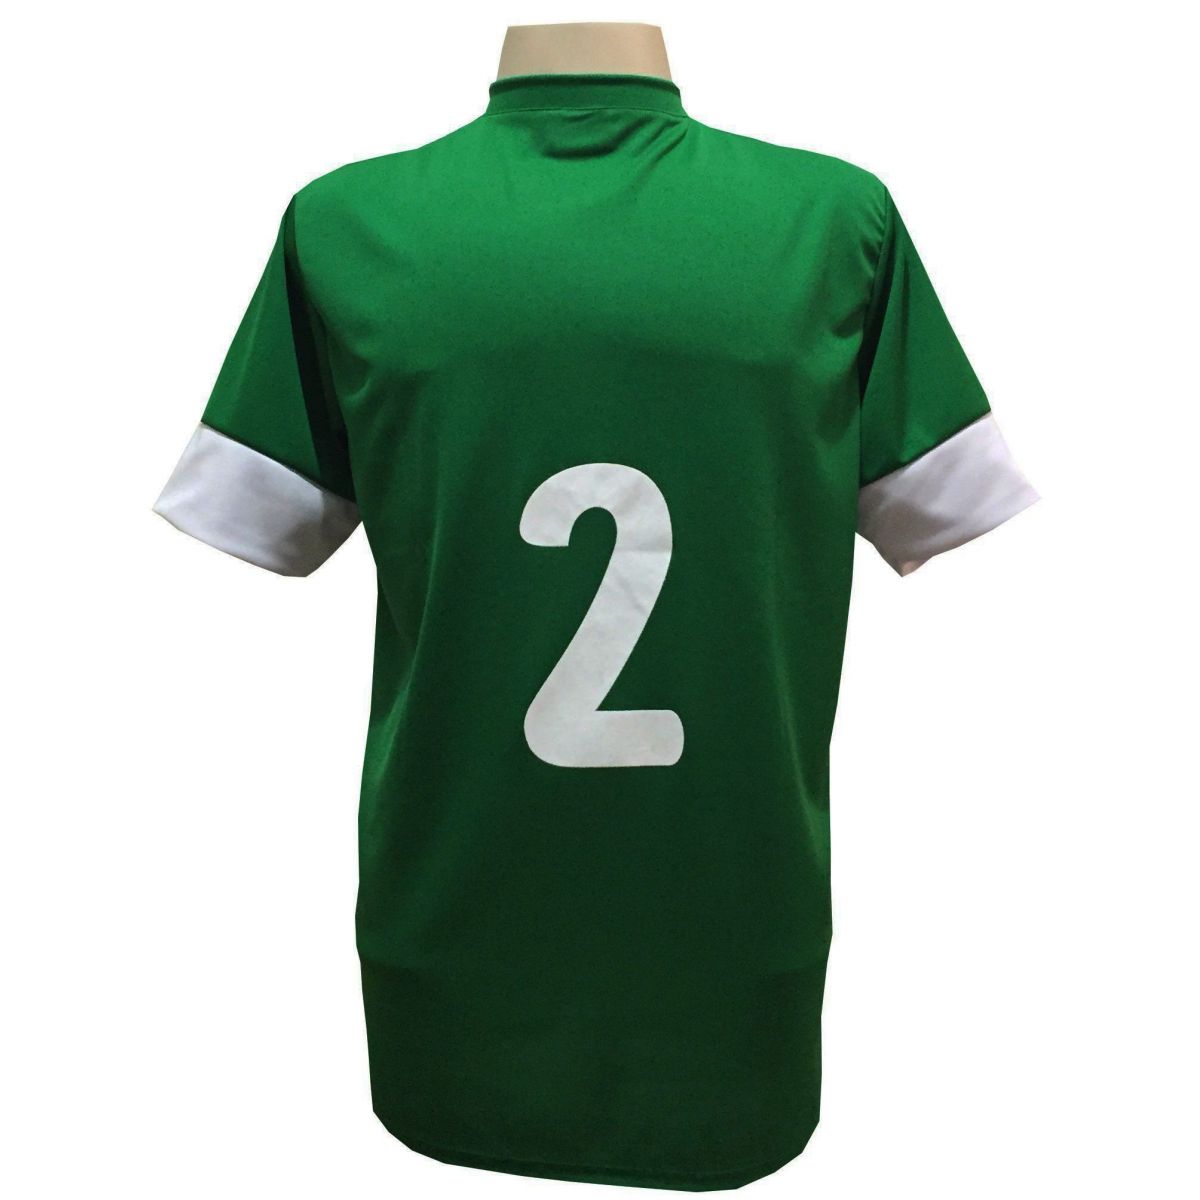 Uniforme Esportivo com 18 camisas modelo Columbus Verde/Branco + 18 calções modelo Madrid Verde + Brindes